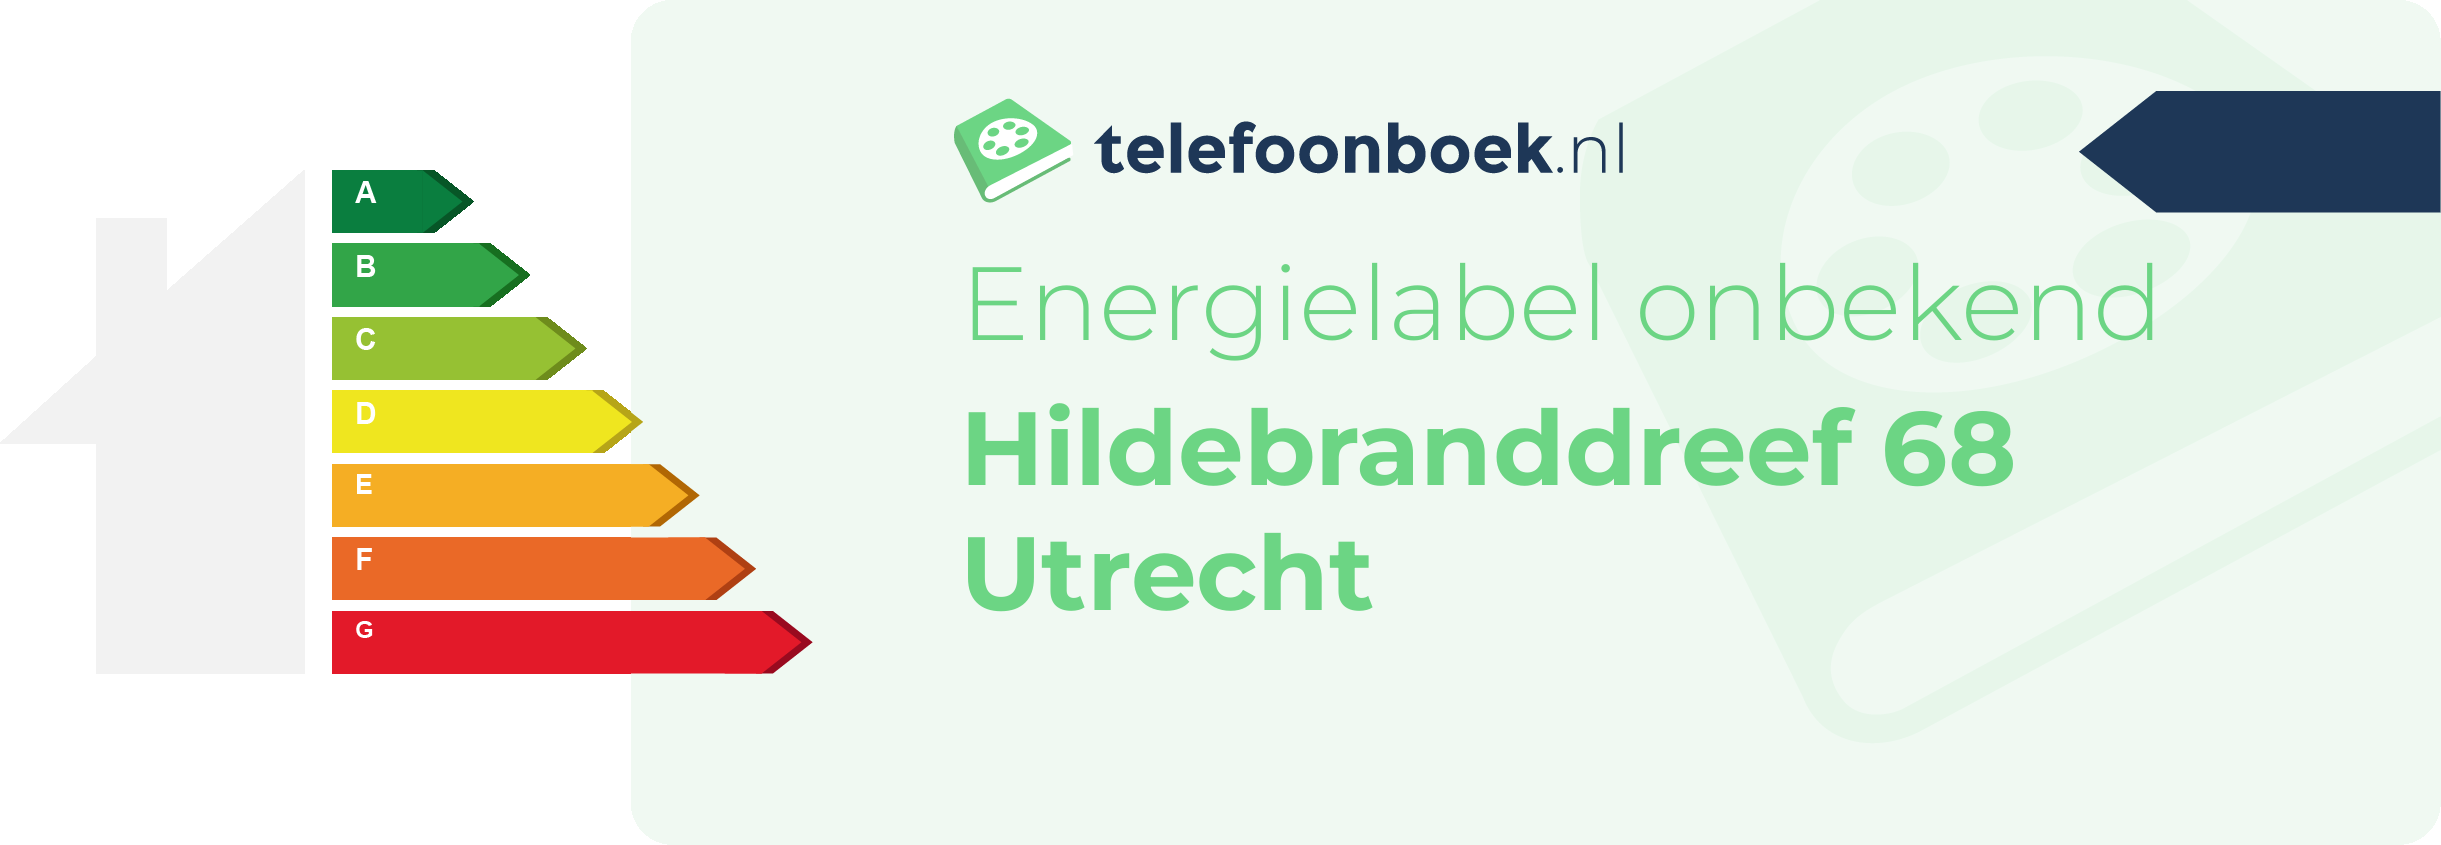 Energielabel Hildebranddreef 68 Utrecht